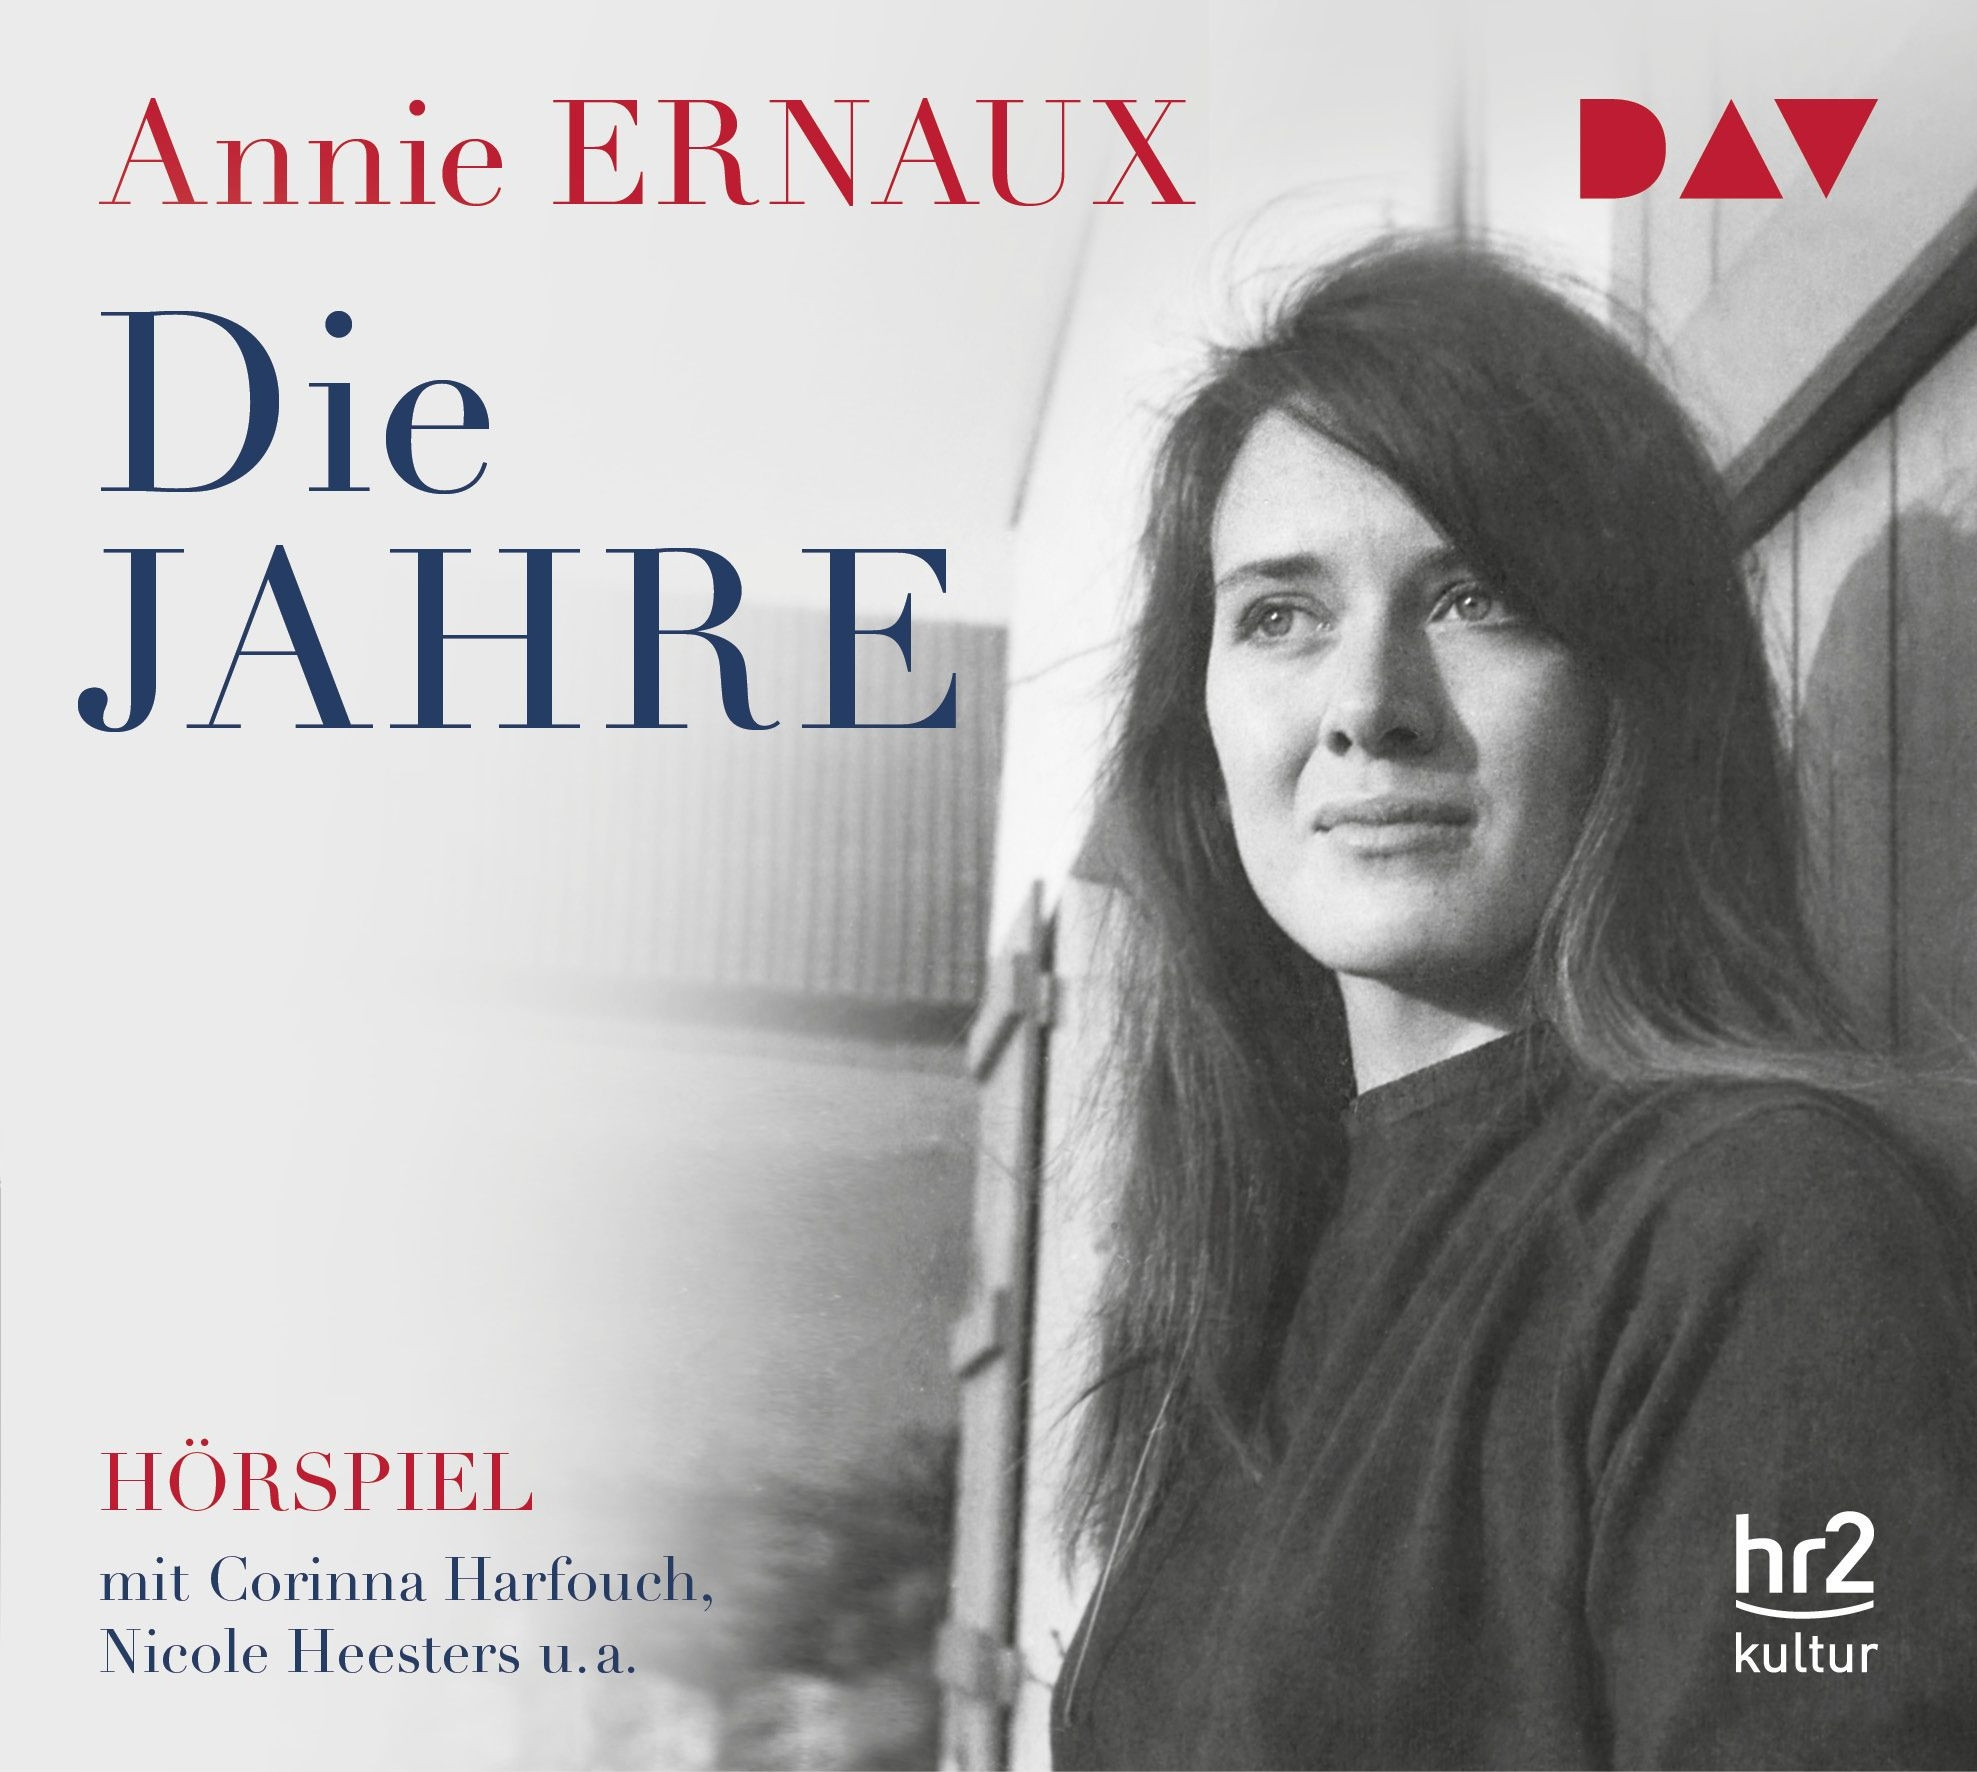 Annie Ernaux - Die Jahre (Hörspiel hr2)